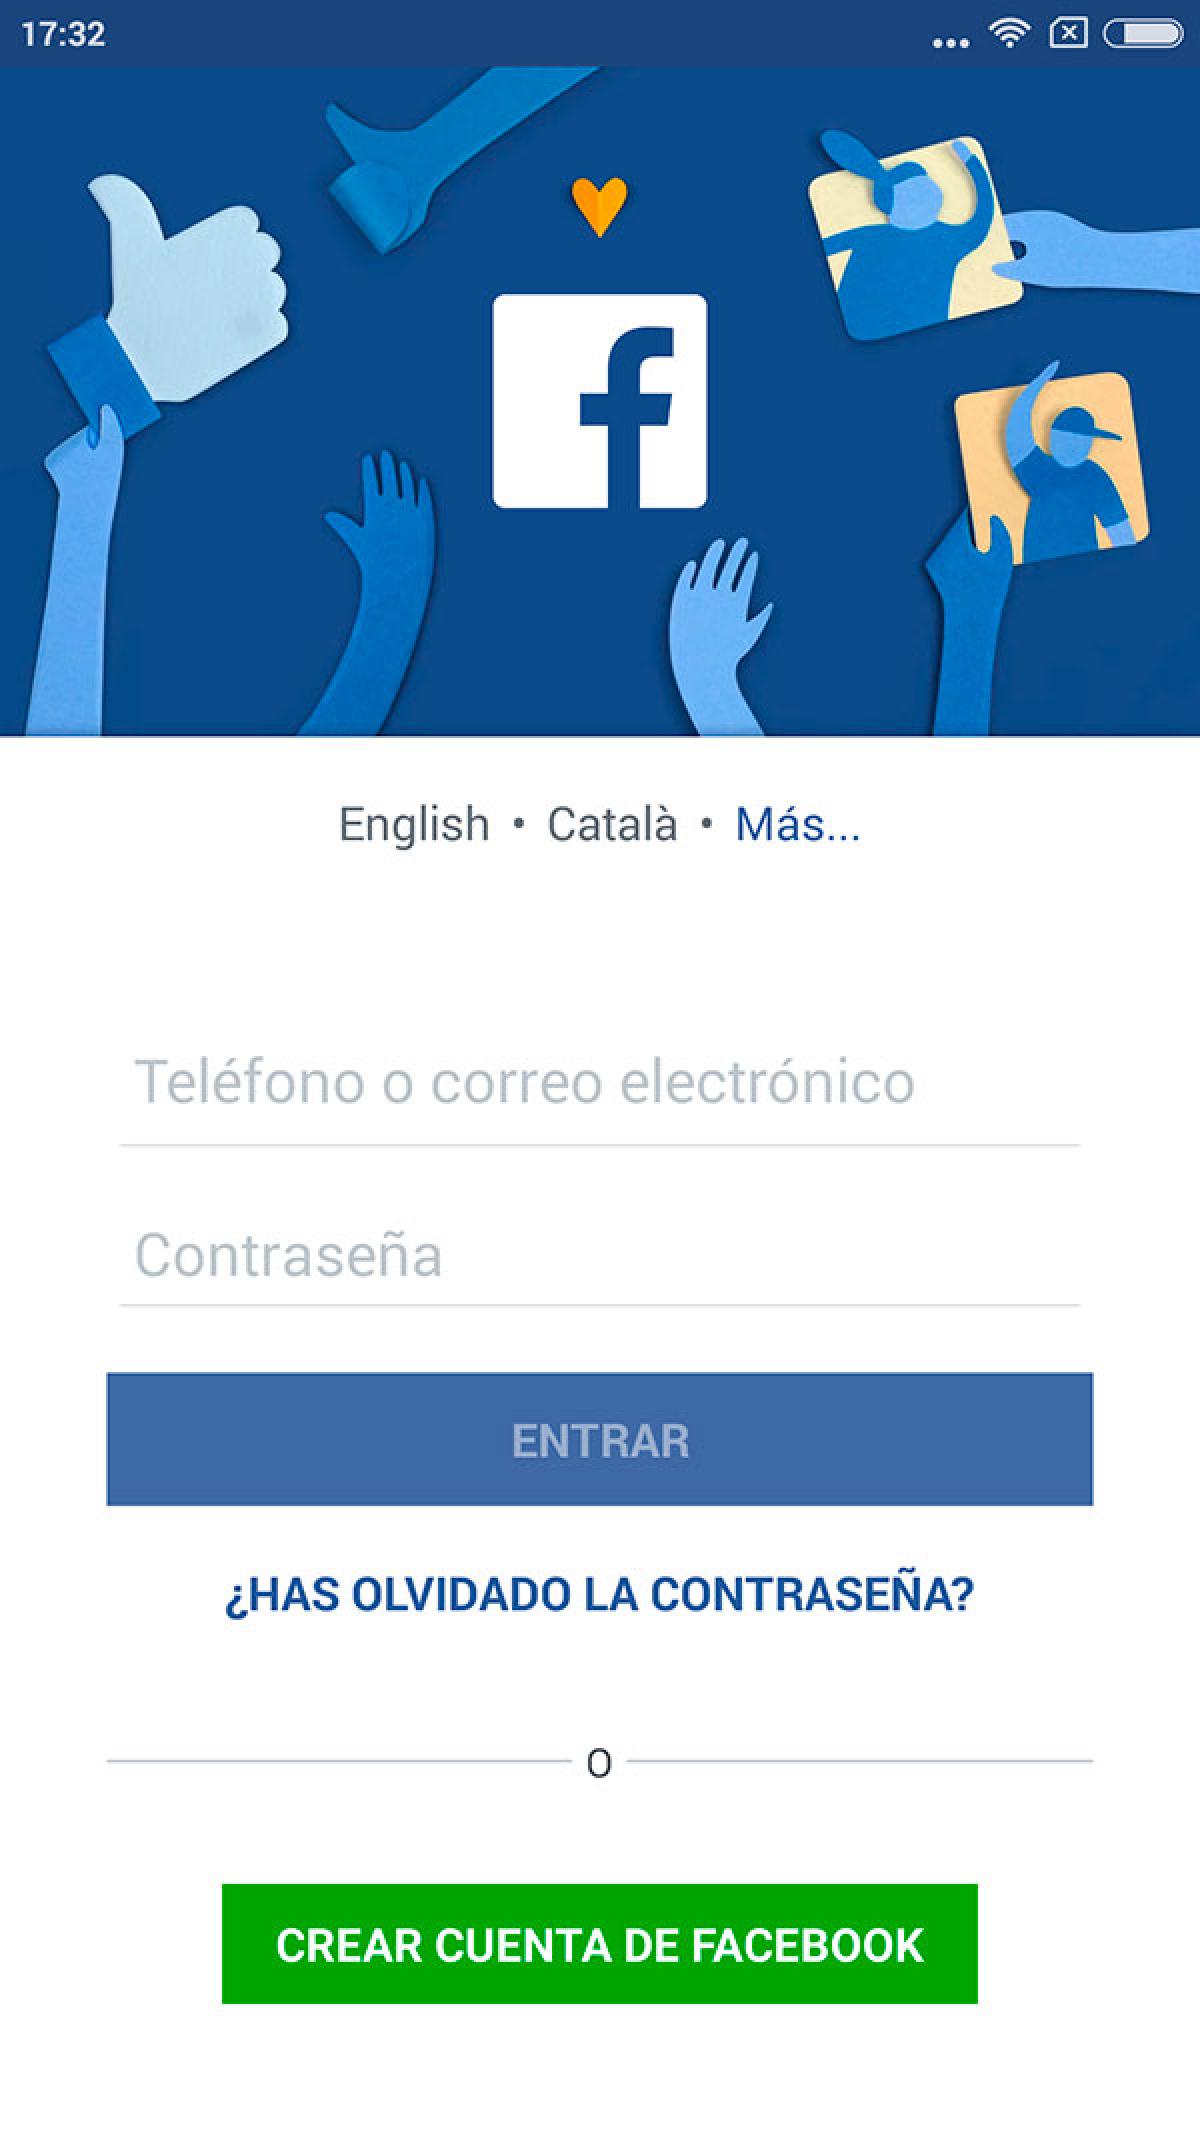 Accede gratis a Facebook en Movistar durante 2019: ¡Conoce cómo!